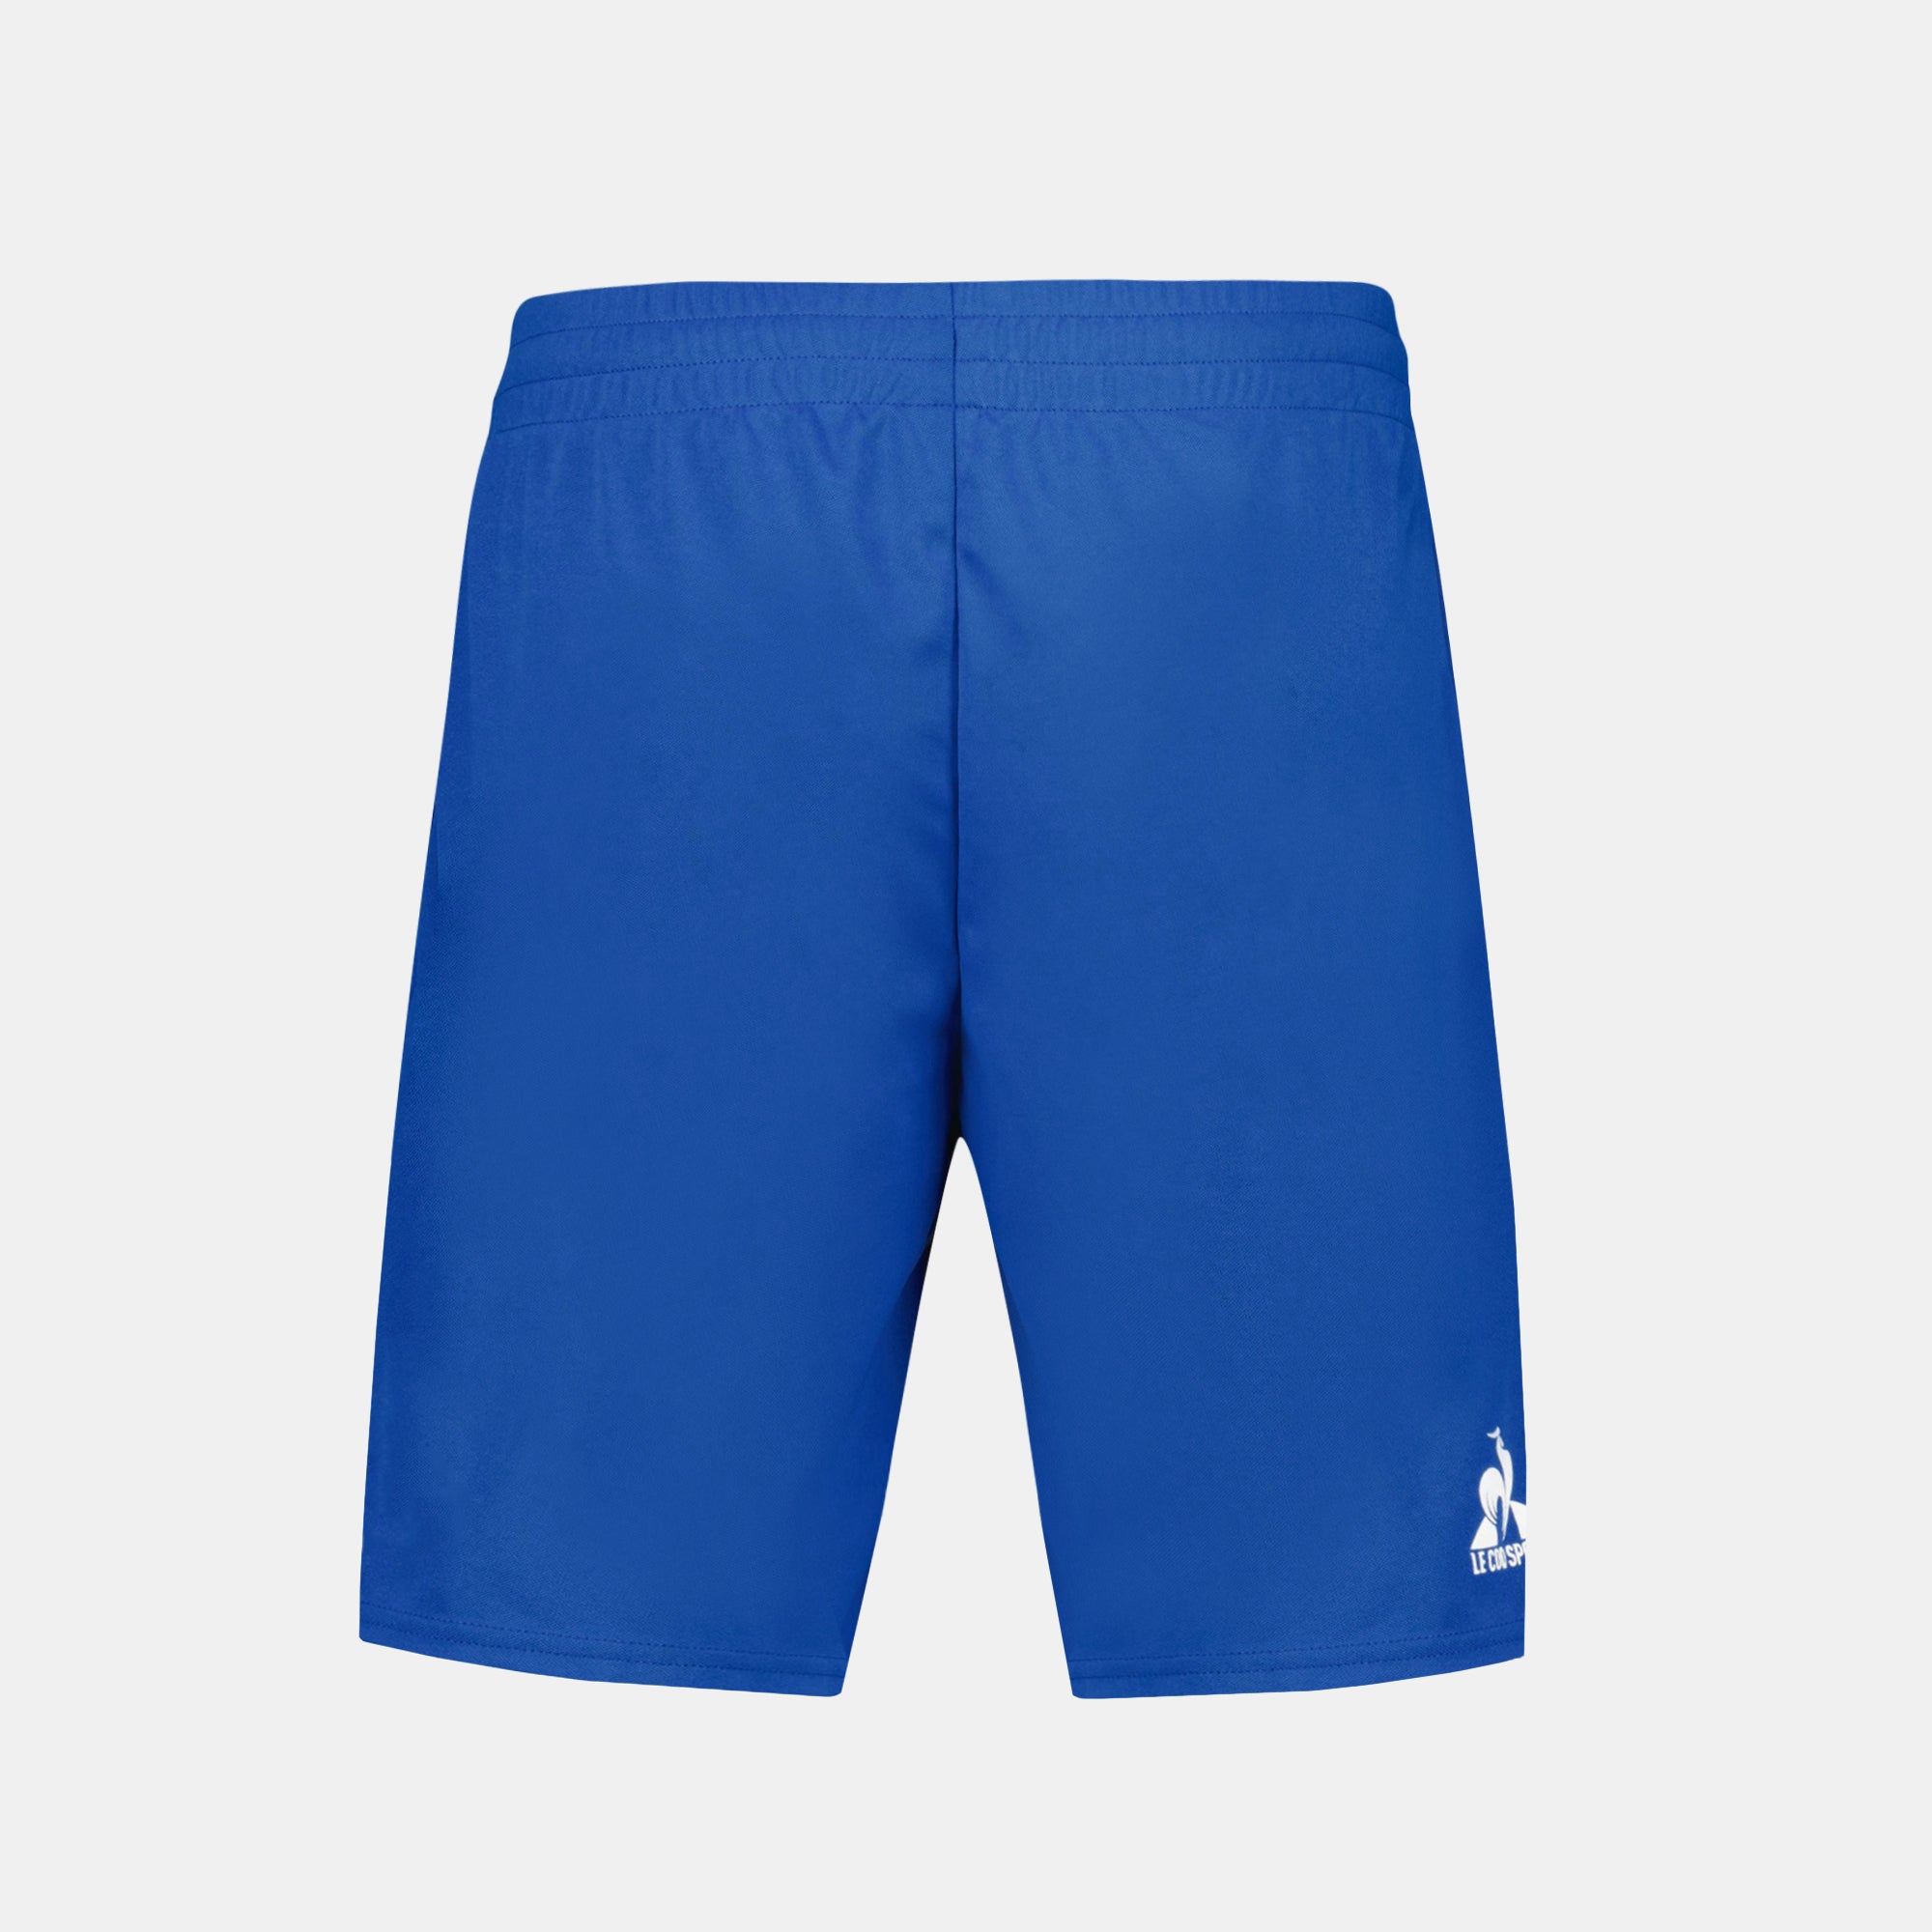 2410521-TENNIS PRO Short 24 N°1 M lapis blue  | Pantaloncini Uomo